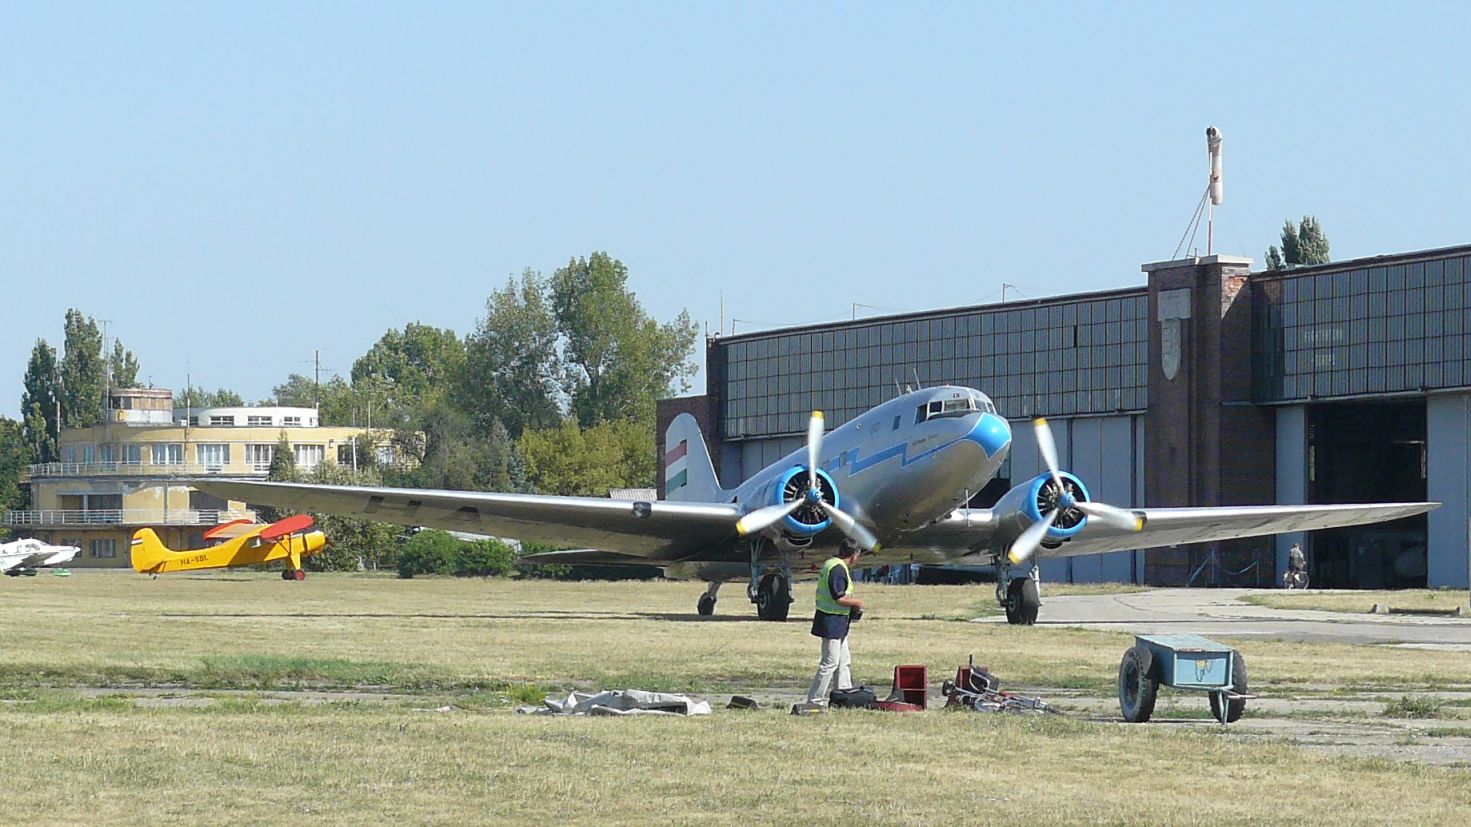 A HA-LIX, a magyar légiközlekedés egykori zászlóshajója Budaörsön<br>Klikkeljen a képre, és nézze meg Márványi Péter korábbi, másfajta Li-2-es repüléseken készült városfotóit!